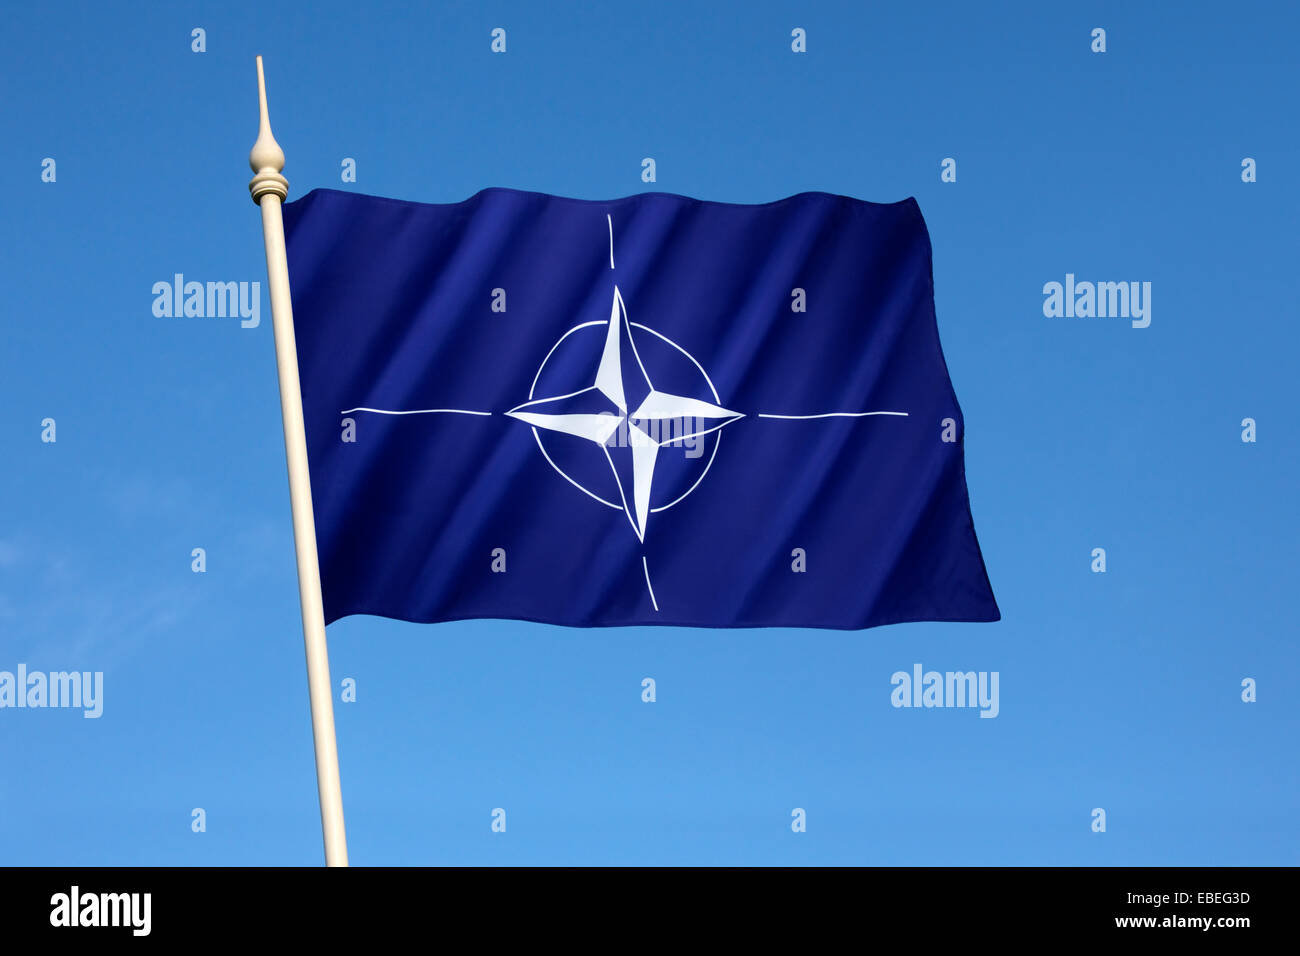 Flag of the North Atlantic Treaty Organization - NATO Stock Photo